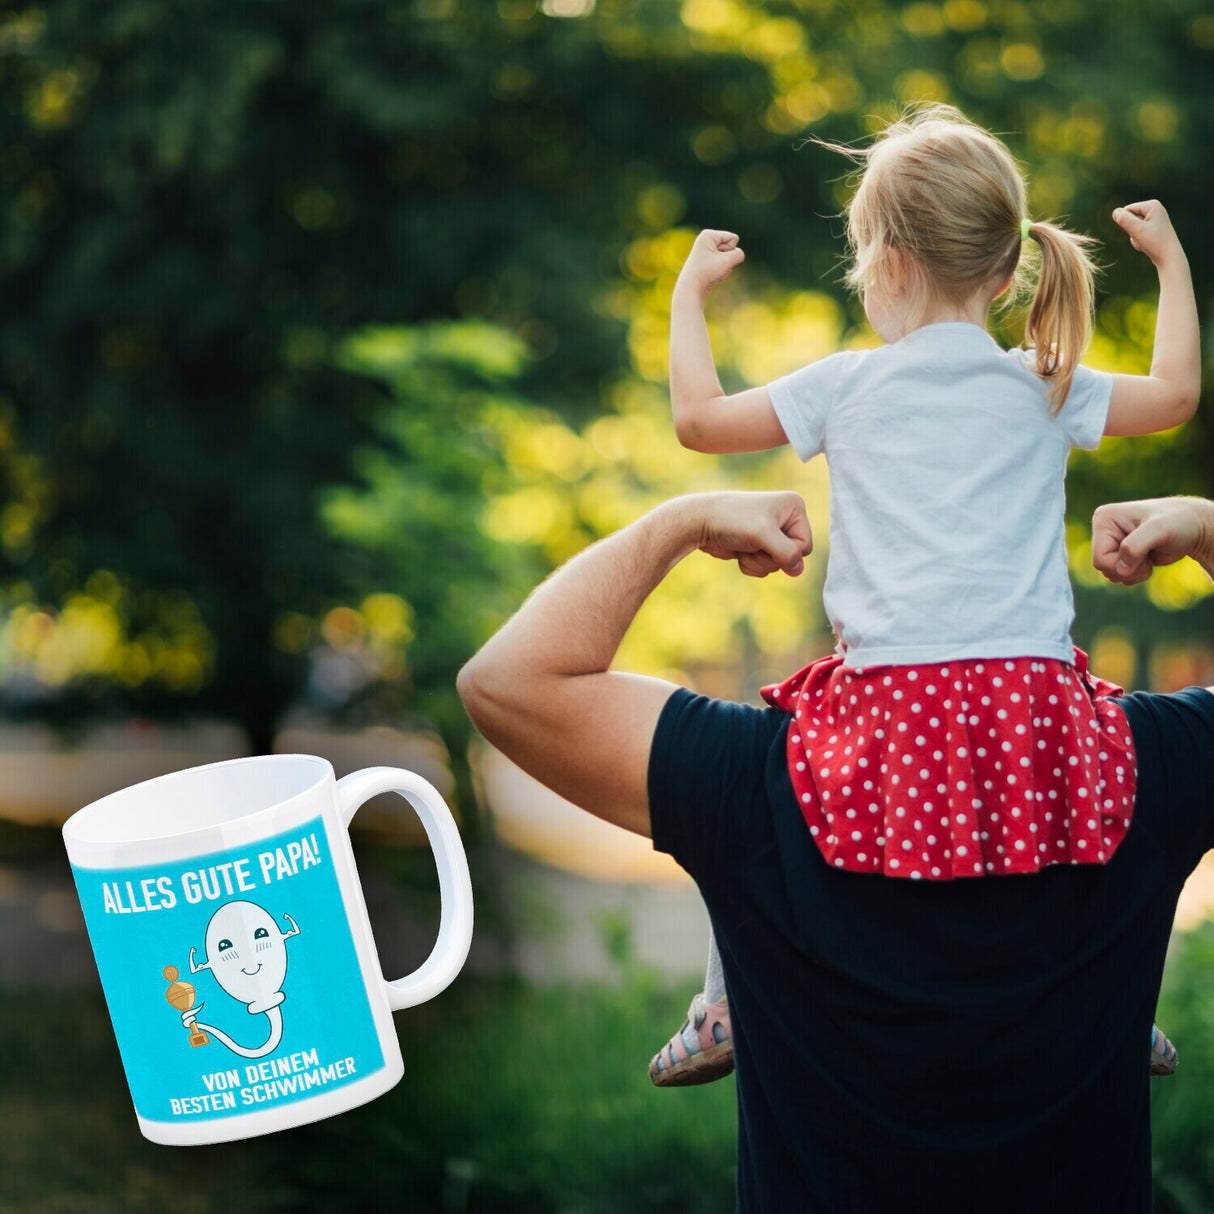 Alles gute Papa von deinem besten Schwimmer Kaffeebecher zum Vatertag